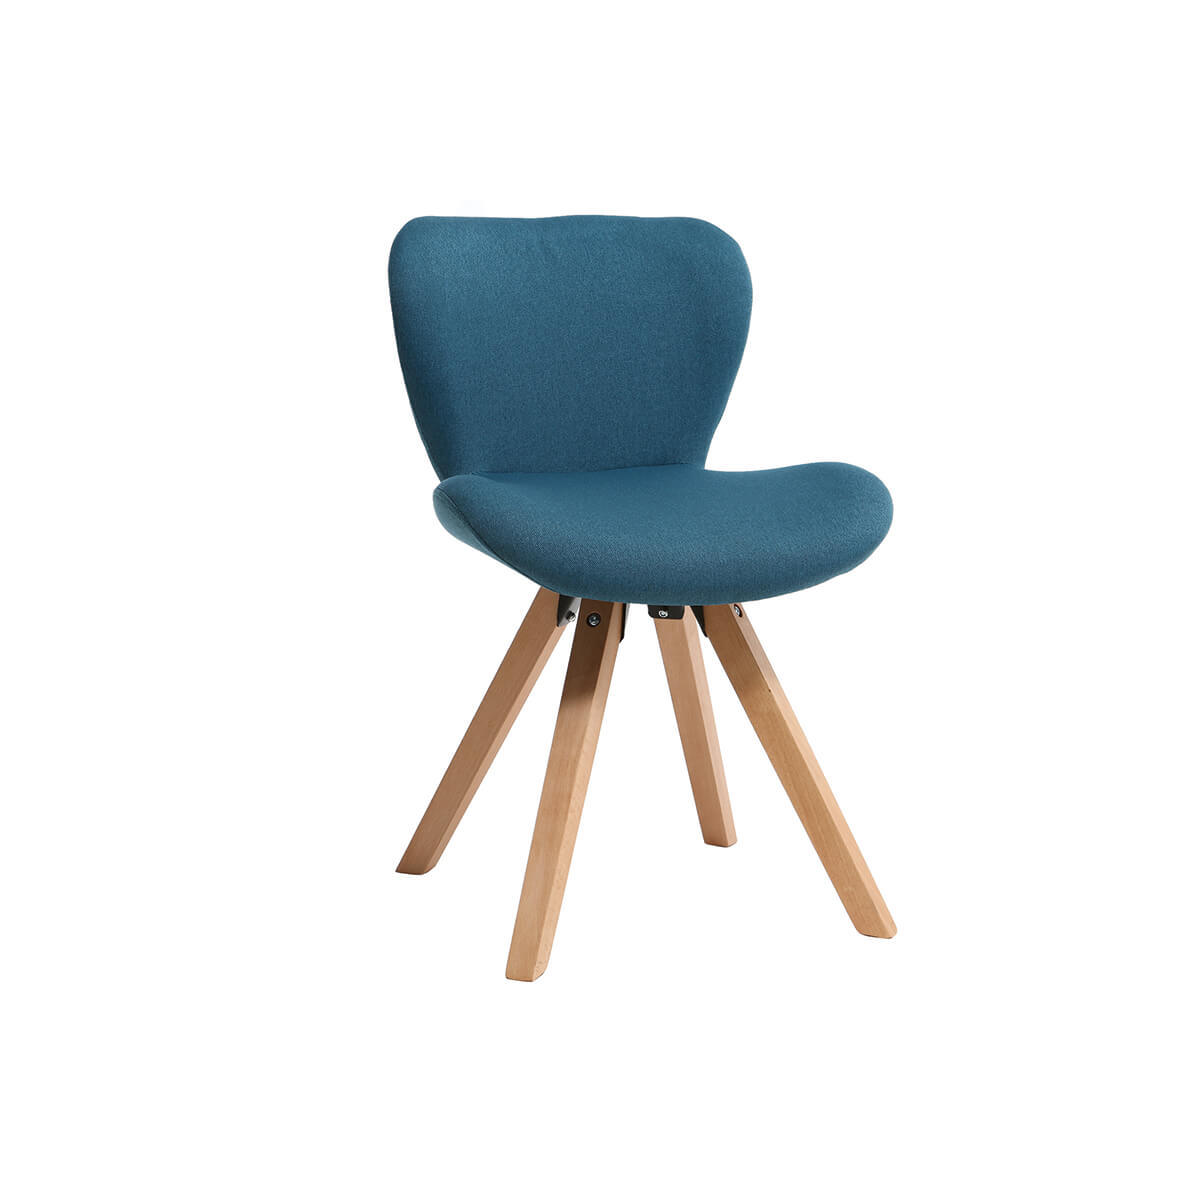 Chaise scandinave en tissu bleu canard et bois clair ANYA vue1